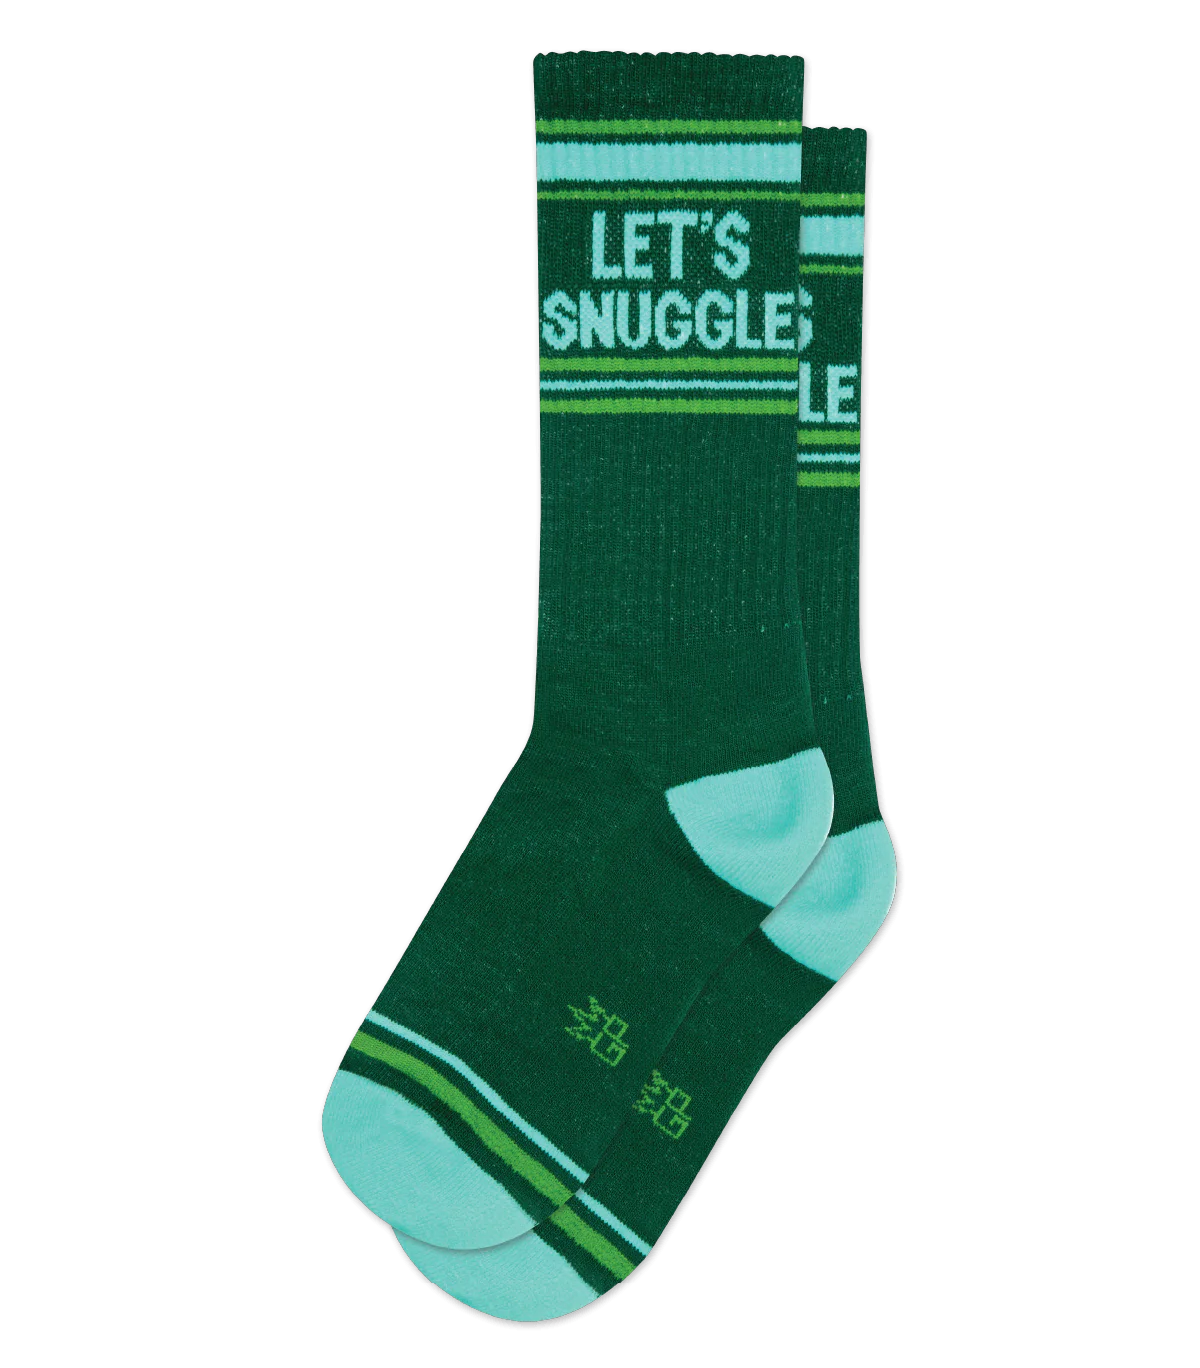 Let's Snuggle Socks